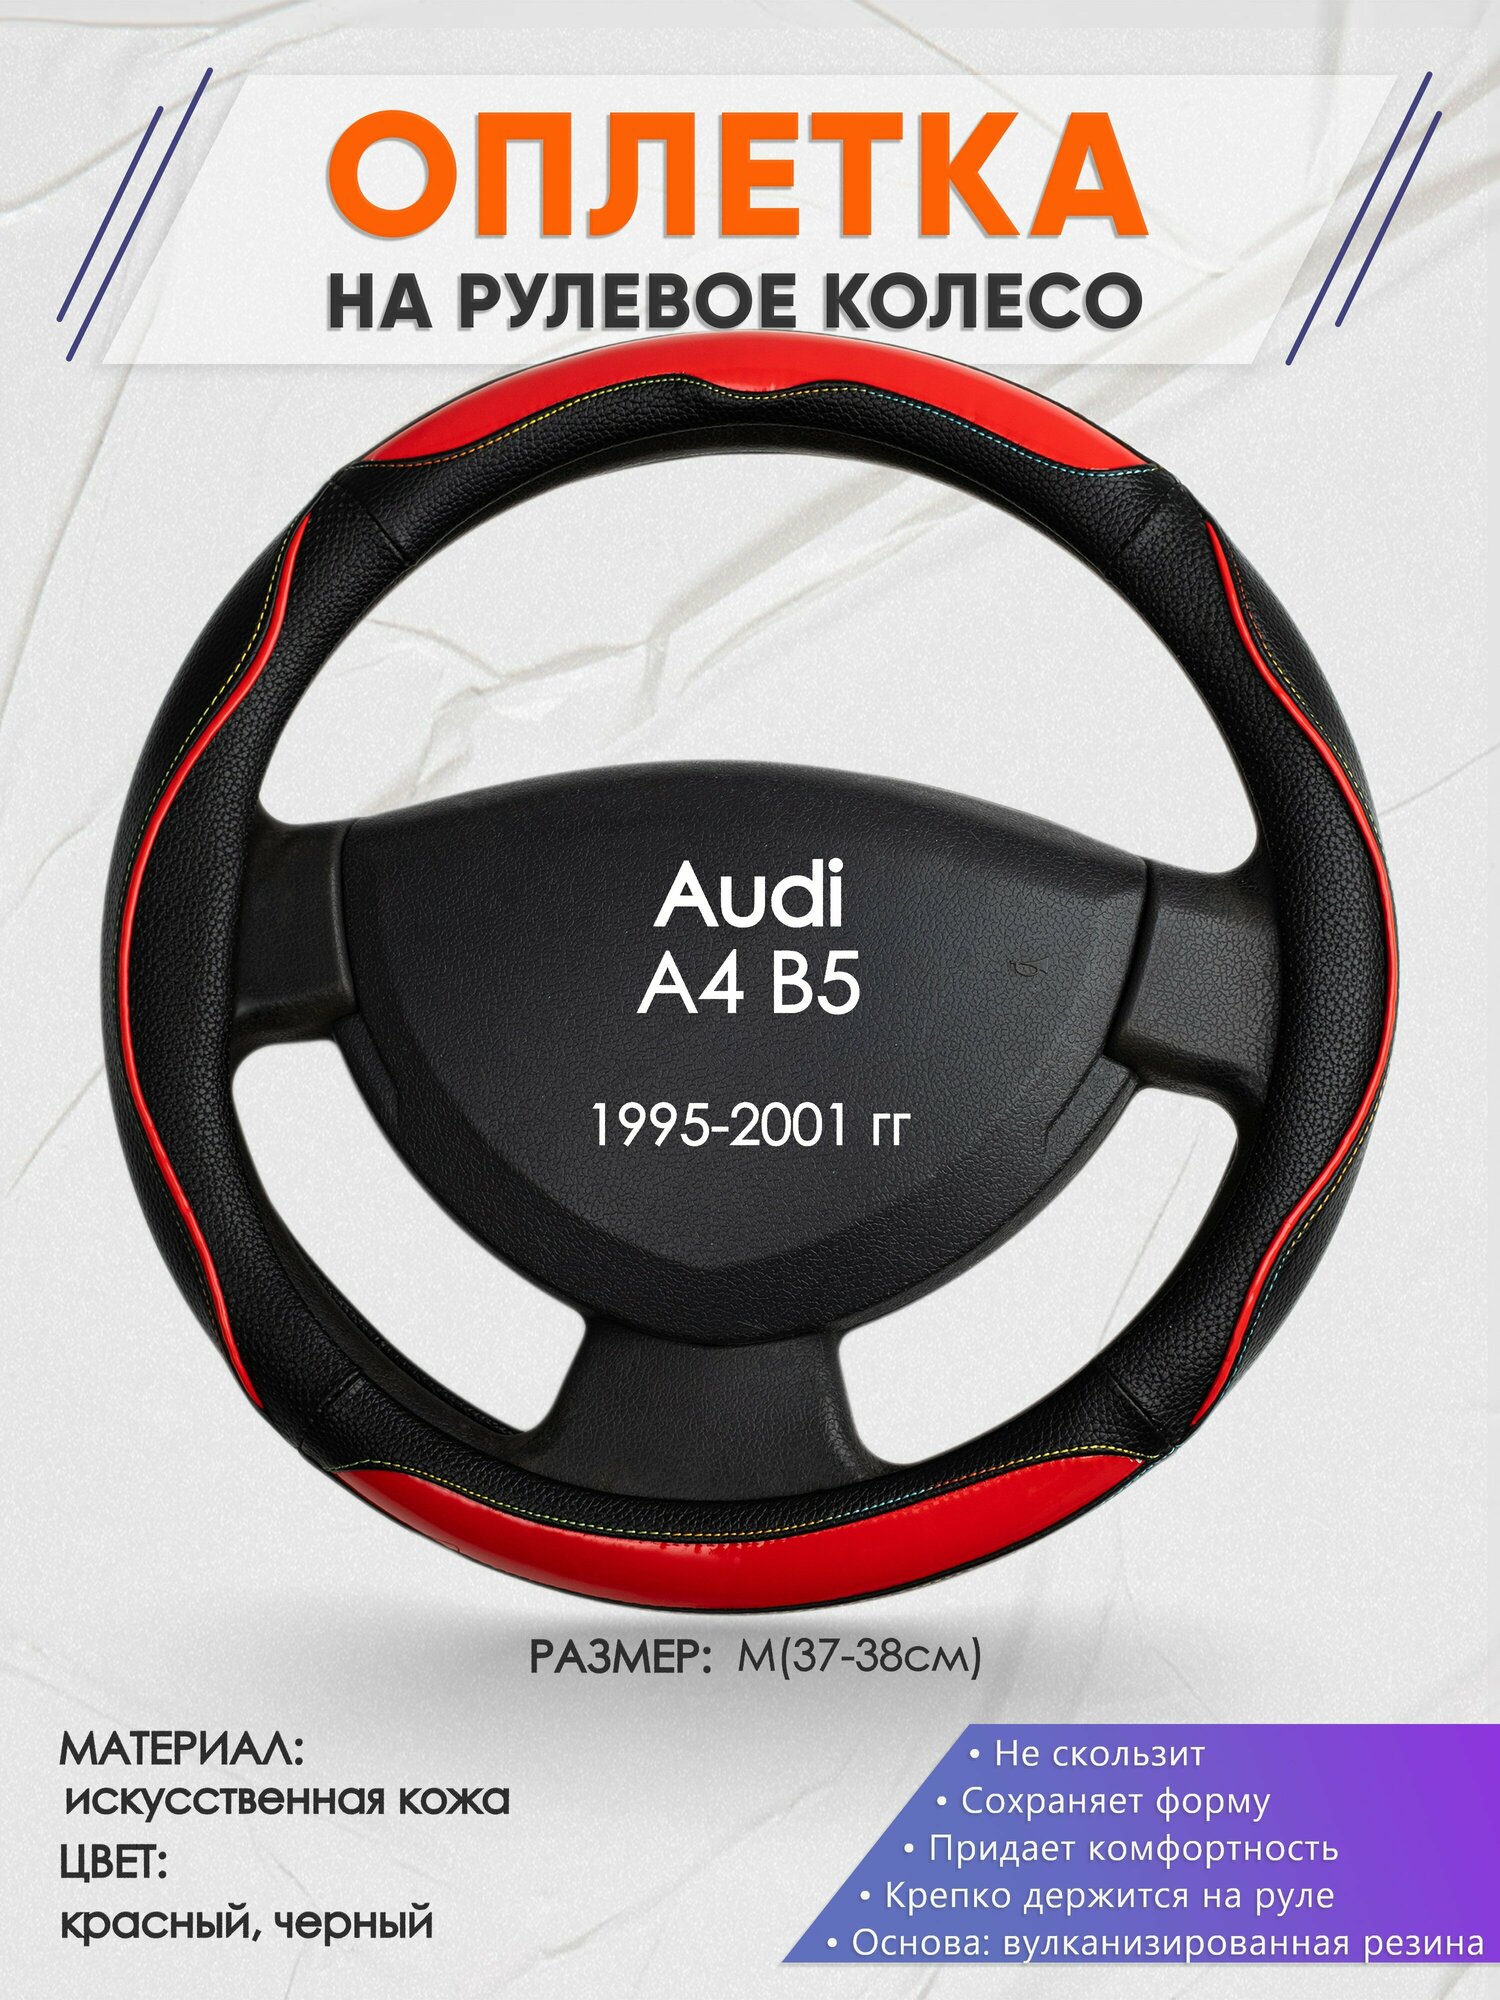 Оплетка на руль для Audi A4 B5(Ауди А4 б5) 1995-2001 M(37-38см) Искусственная кожа 10